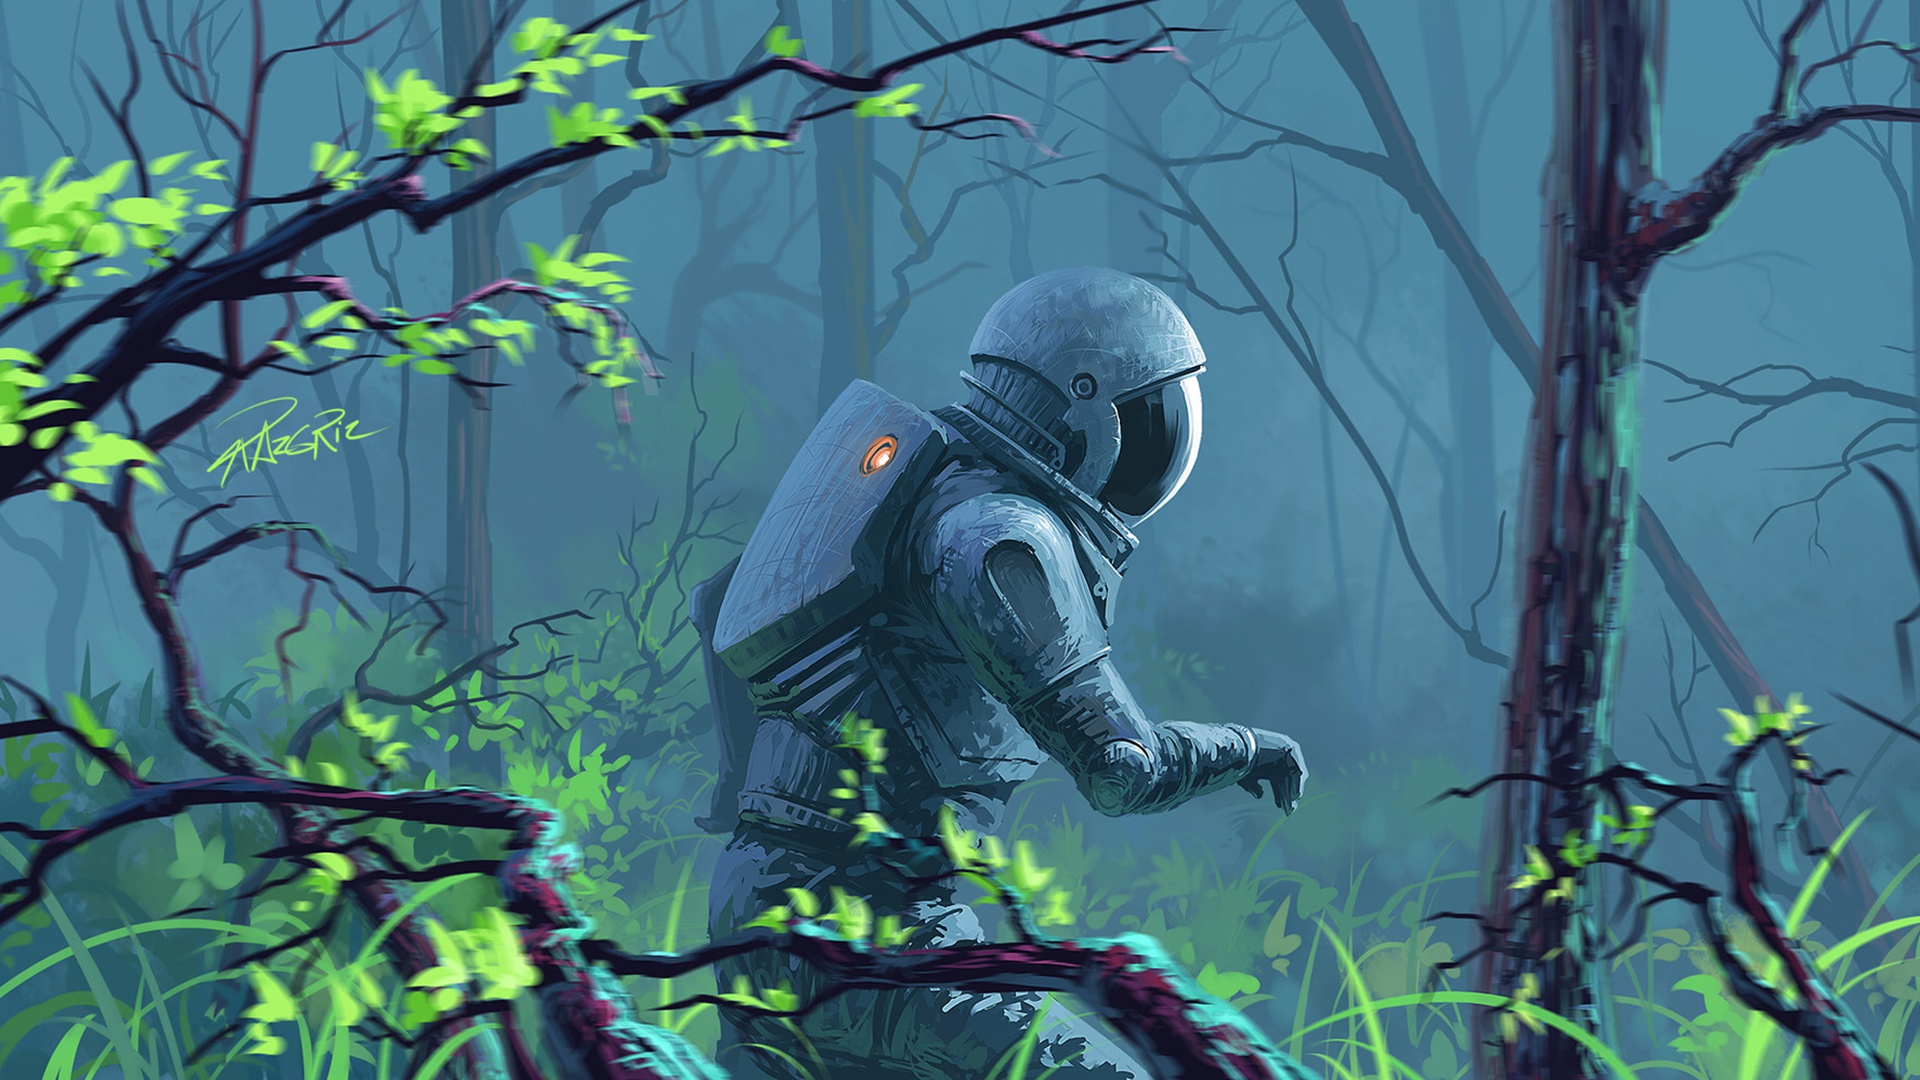 General 1920x1080 planet artwork science fiction astronaut men forest blue